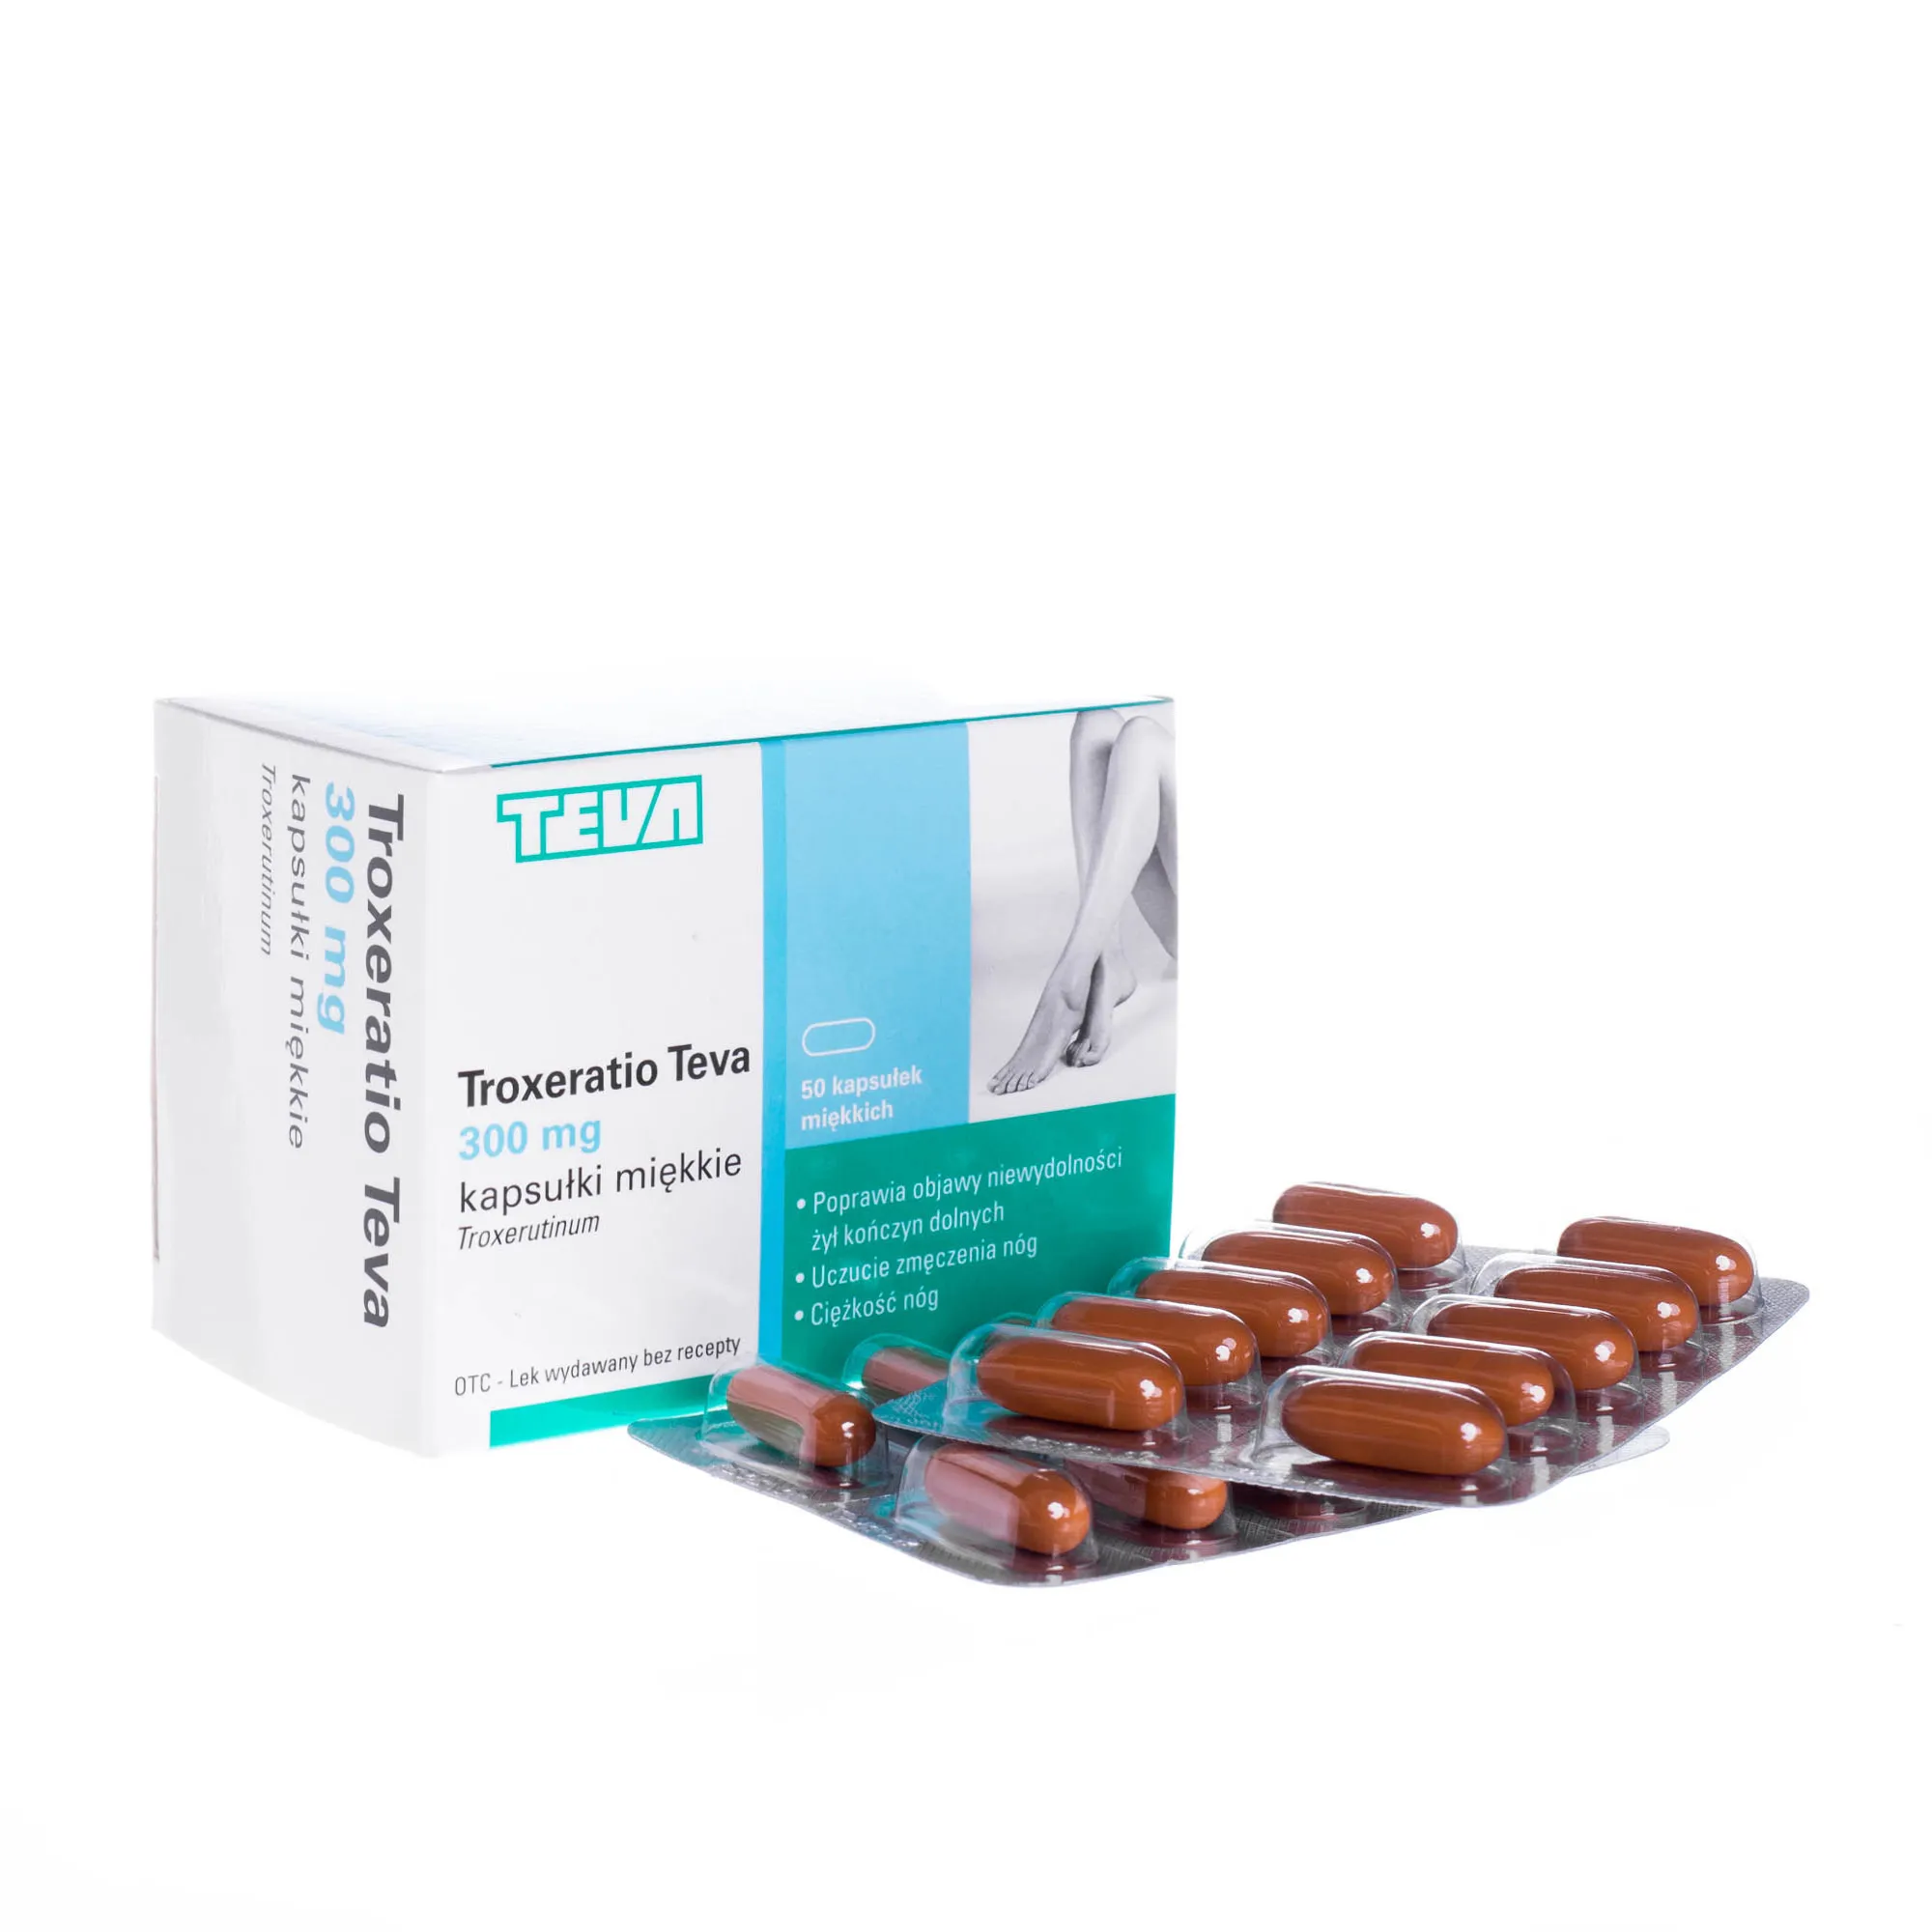 Troxeratio Teva 300 mg - 50 kaps. miękkich poprawia objawy niewydolność żył kończyn dolnych